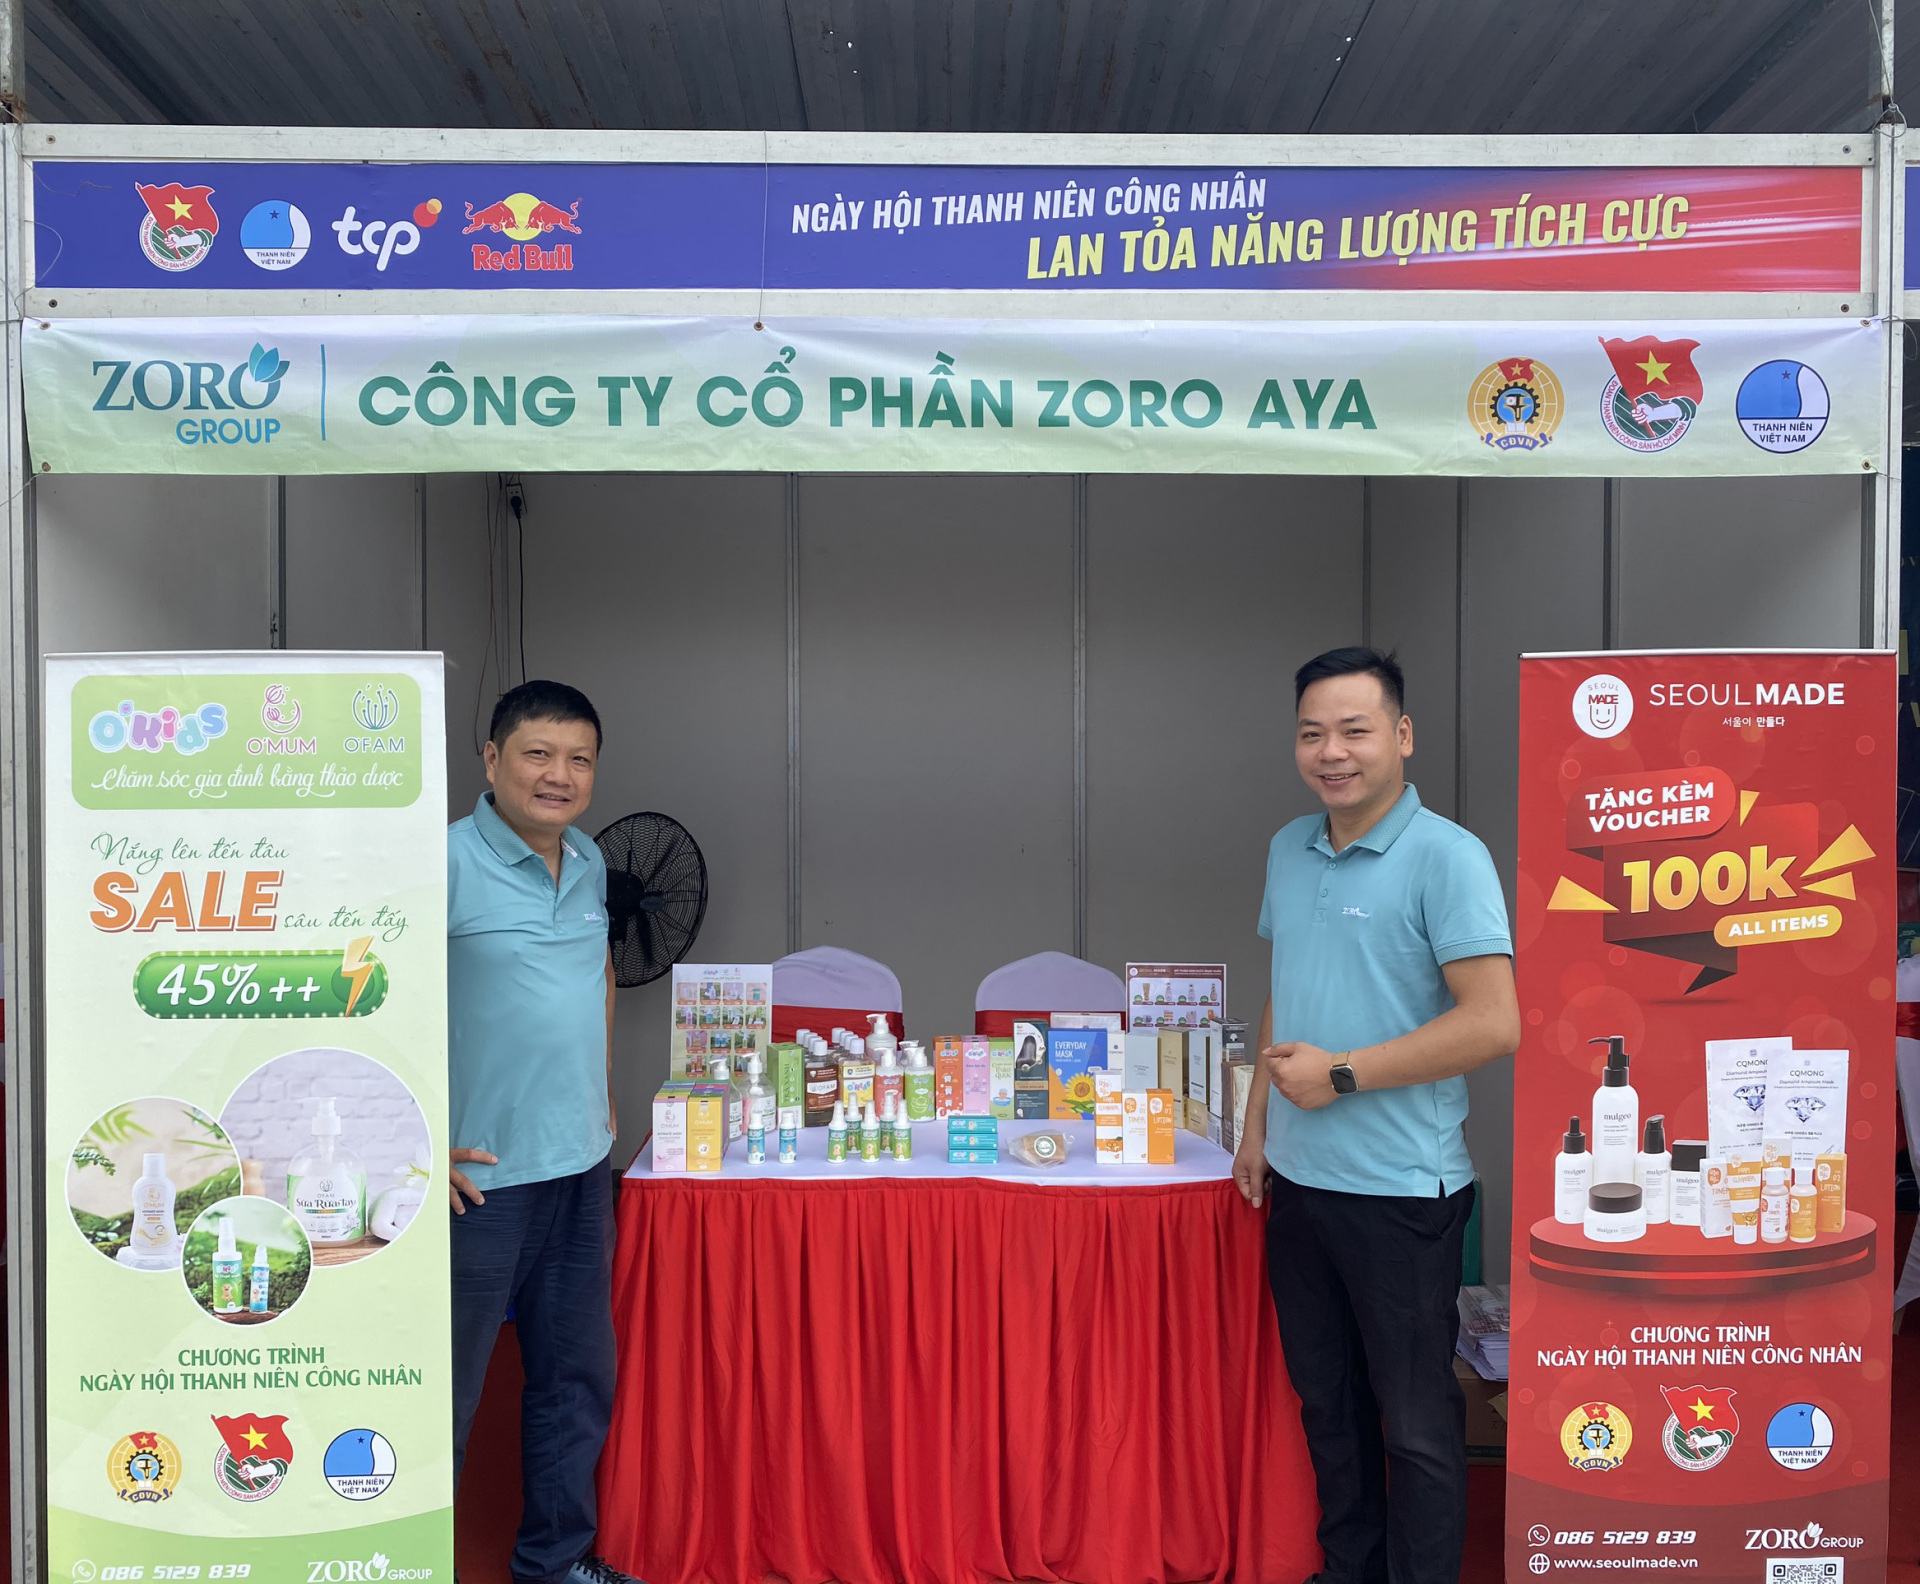 Gian hàng Công ty cổ phần ZORO AYA tại Ngày hội thanh niên công nhân Bắc Ninh